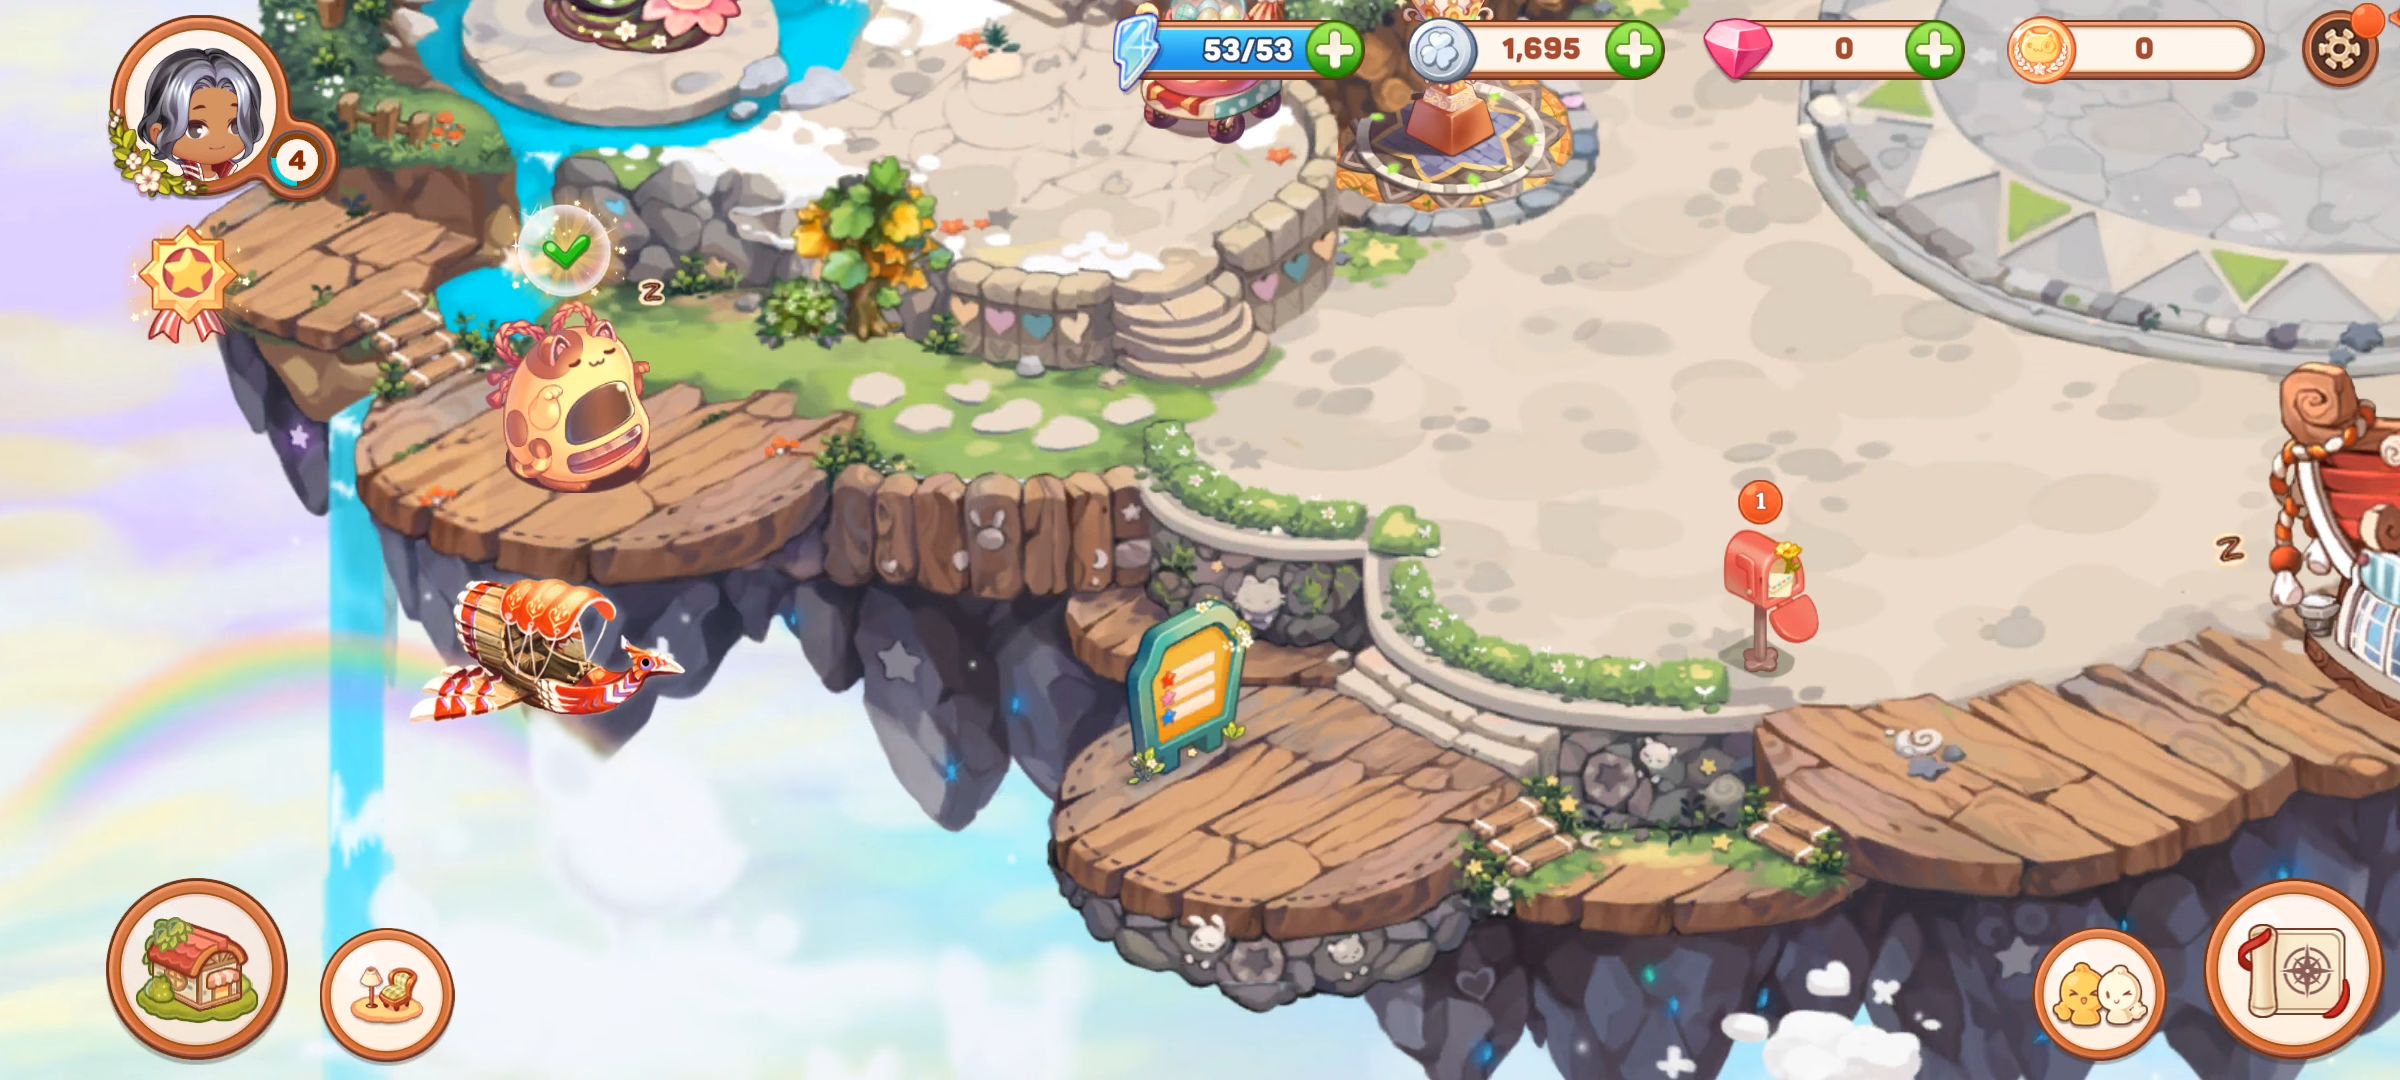 Kawaii Islands: Kawaiiverse - Android game screenshots.